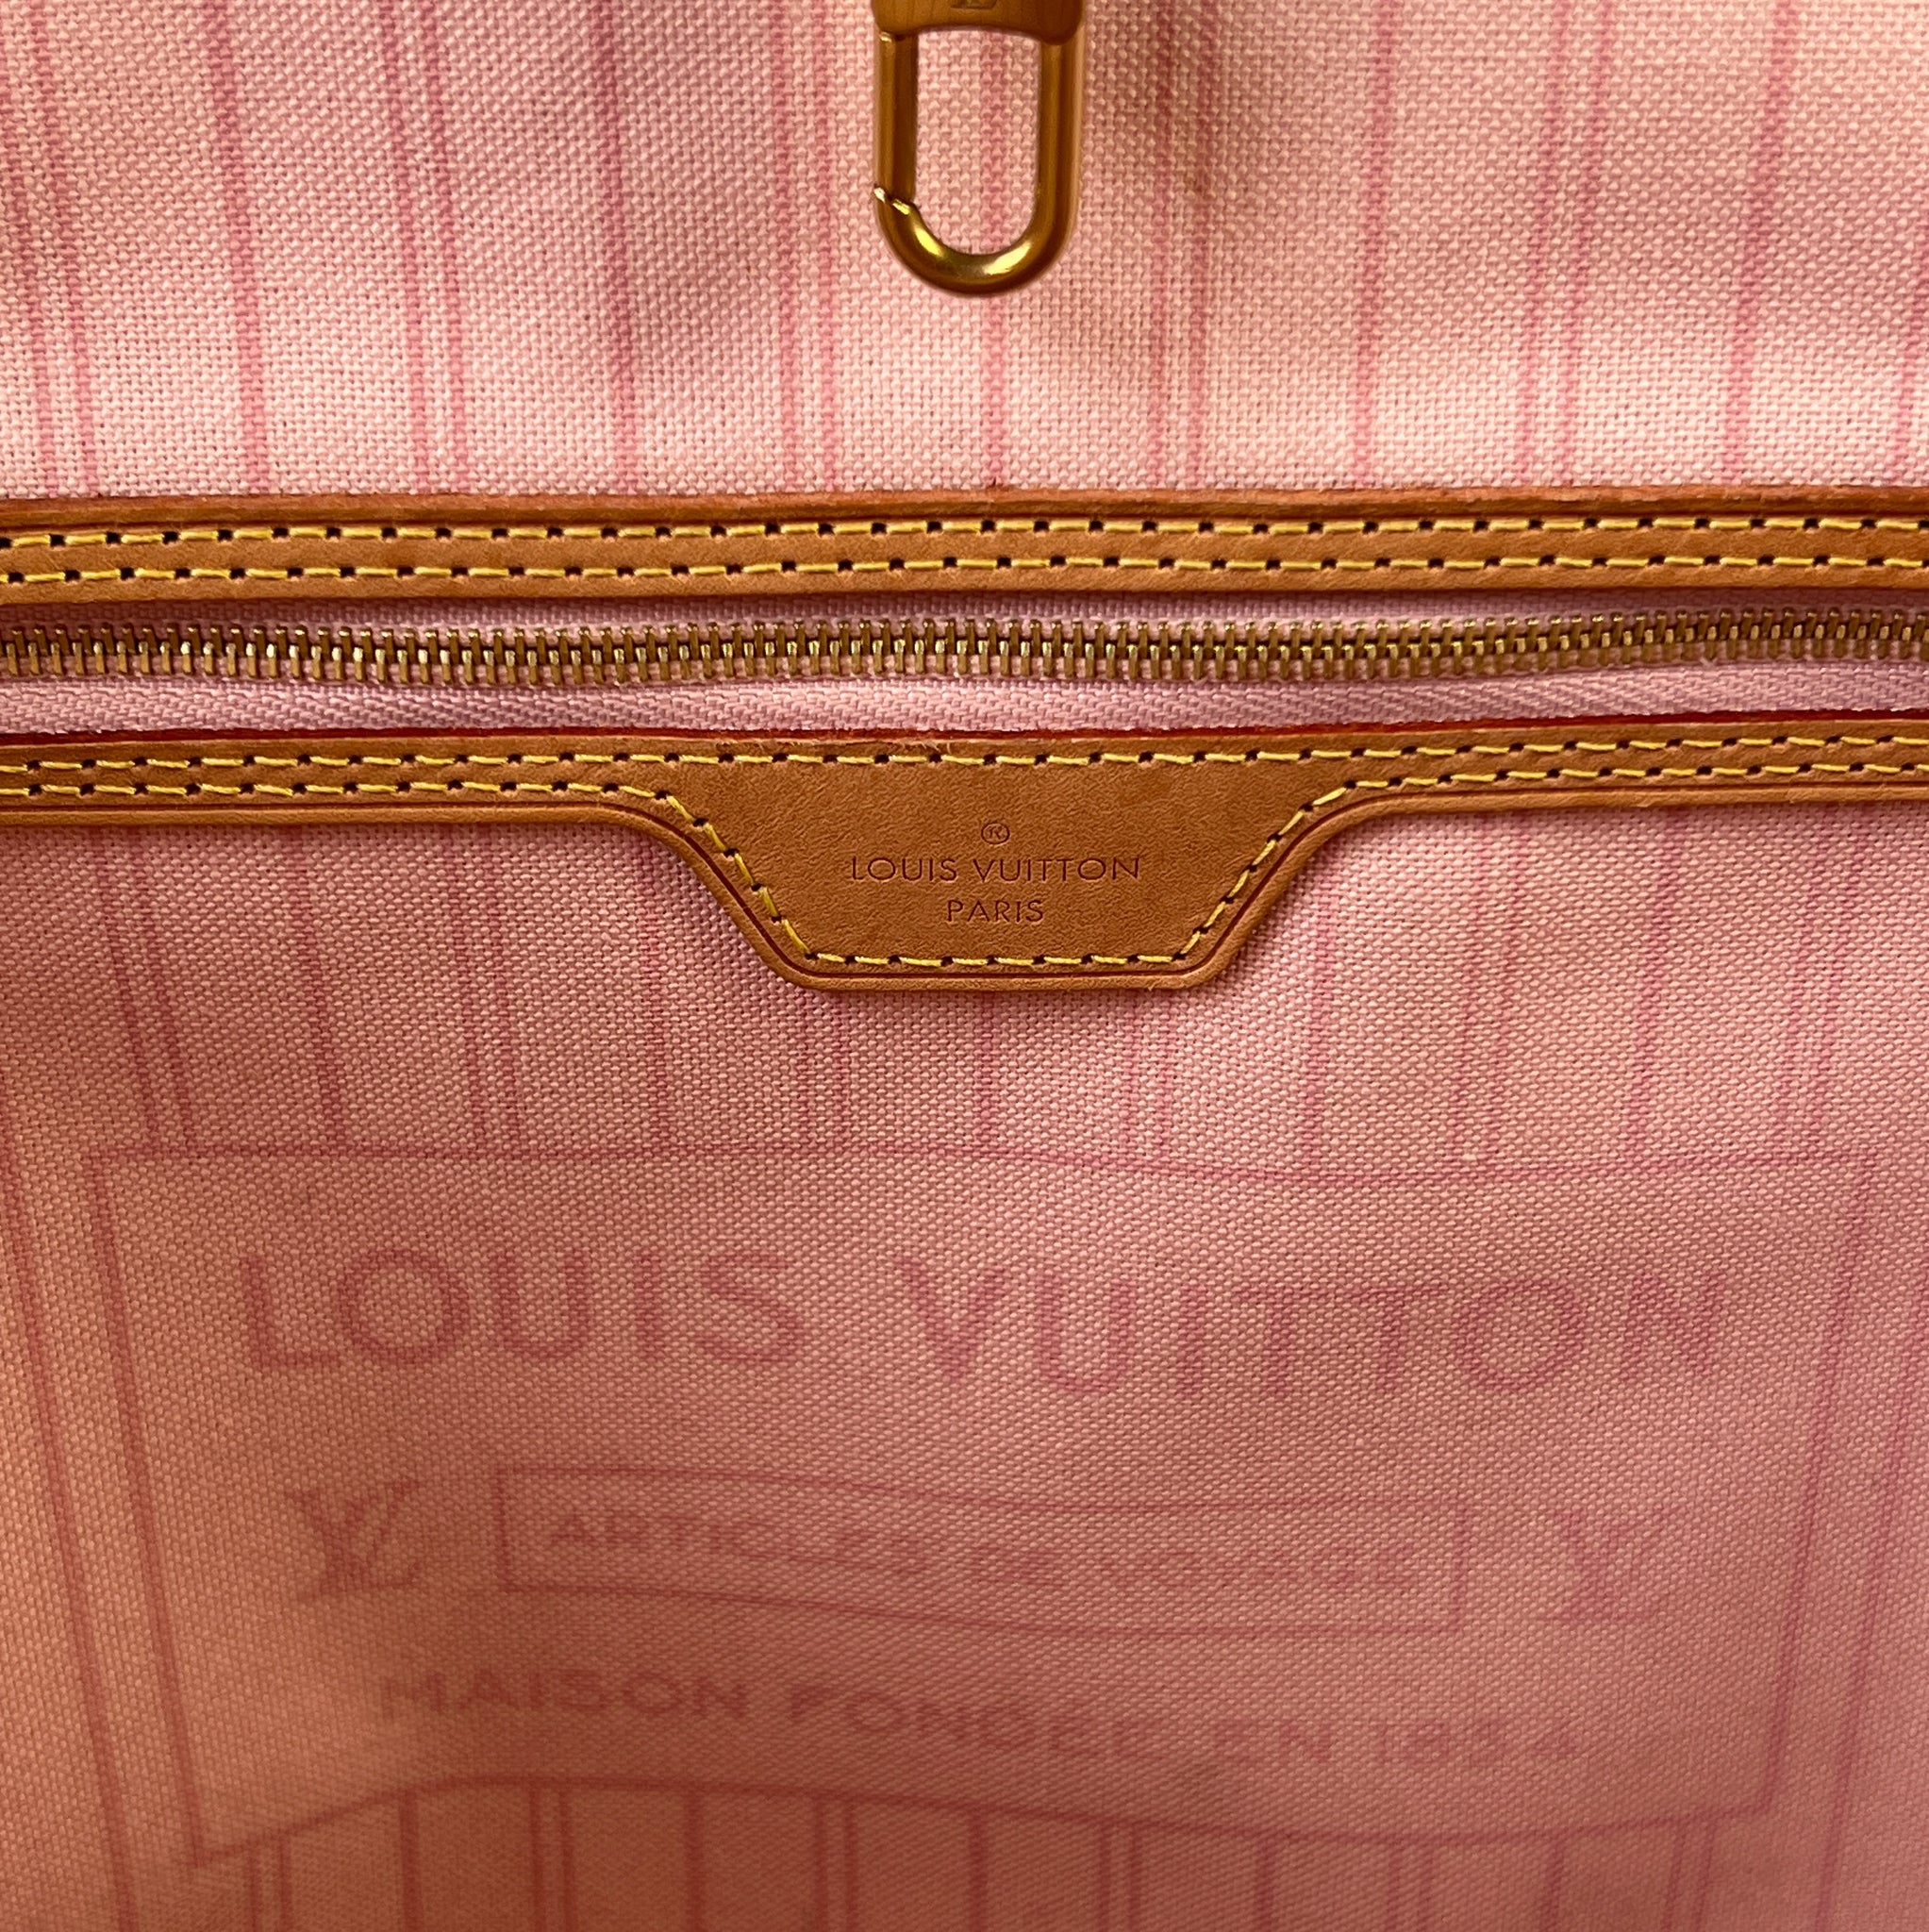 Louis Vuitton neverfull damier azur MM 2019 – My Girlfriend's